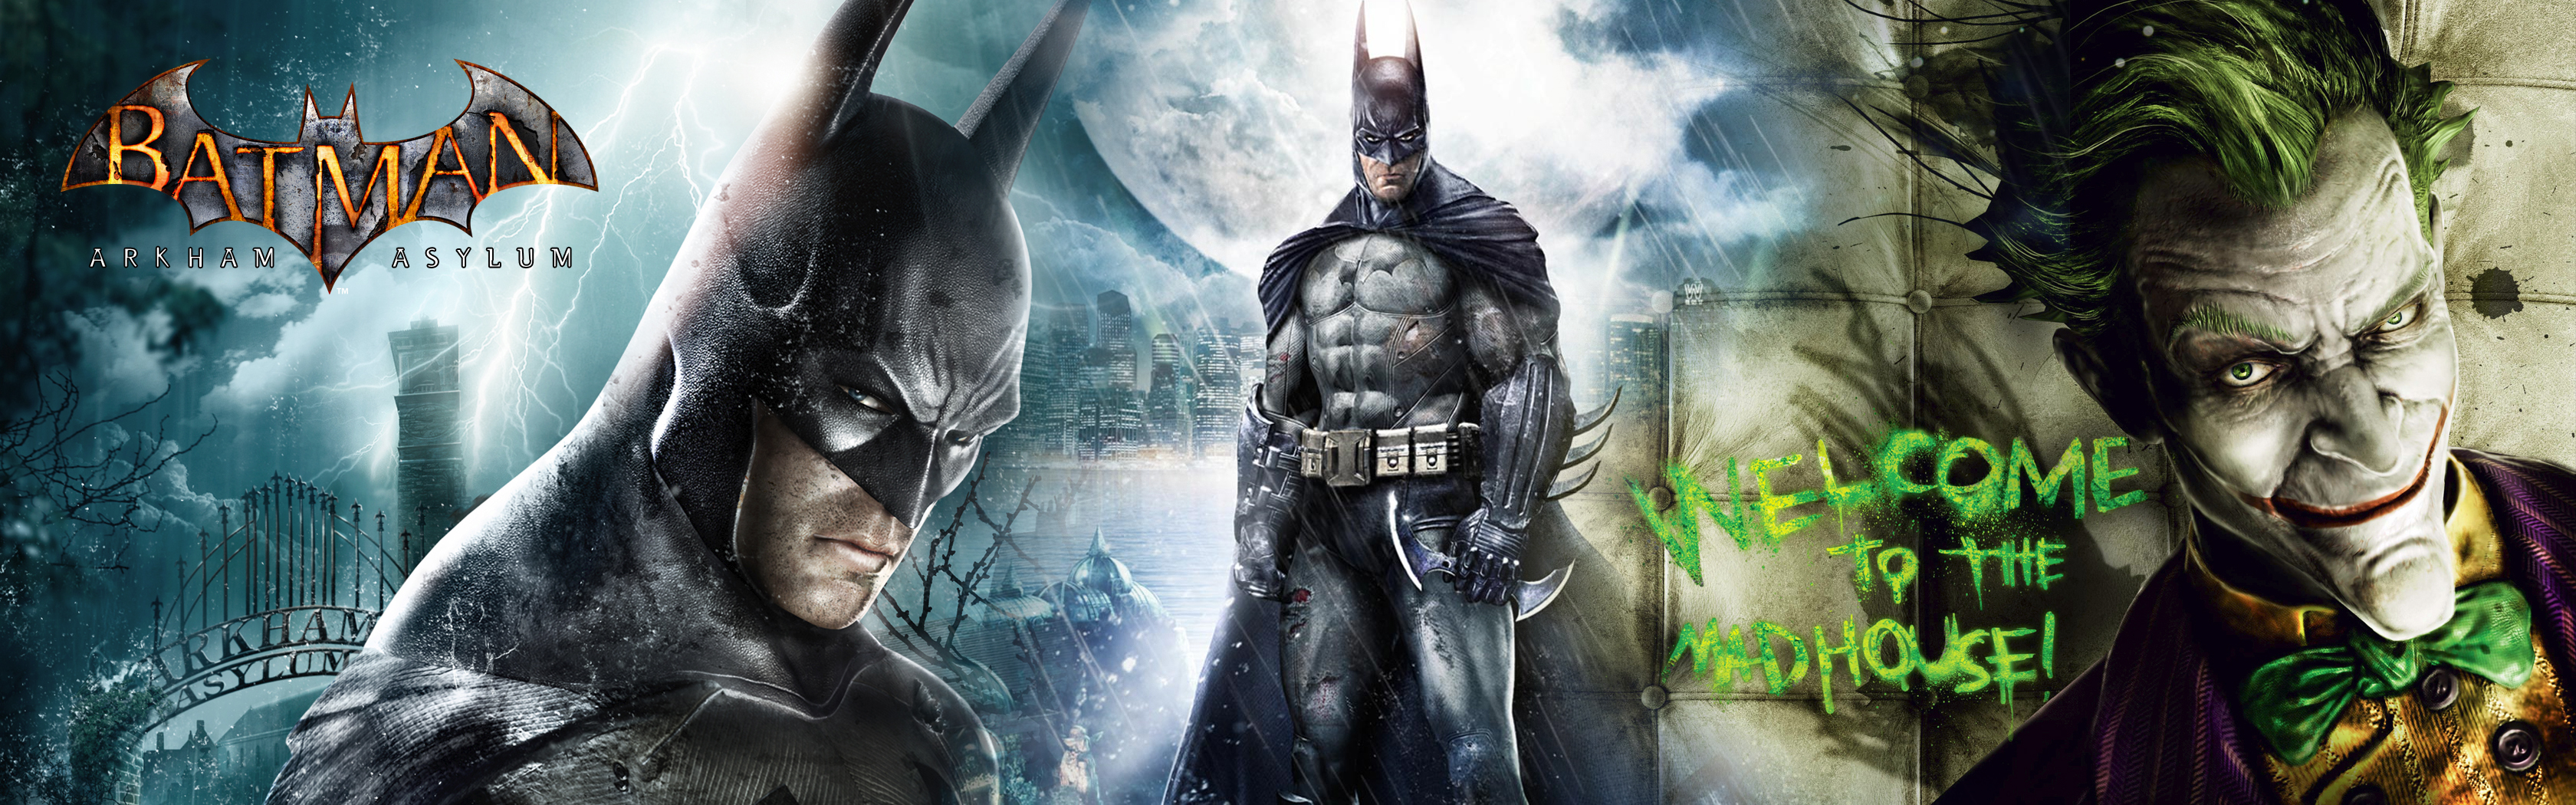 Video Game Batman Arkham Asylum 3360x1050